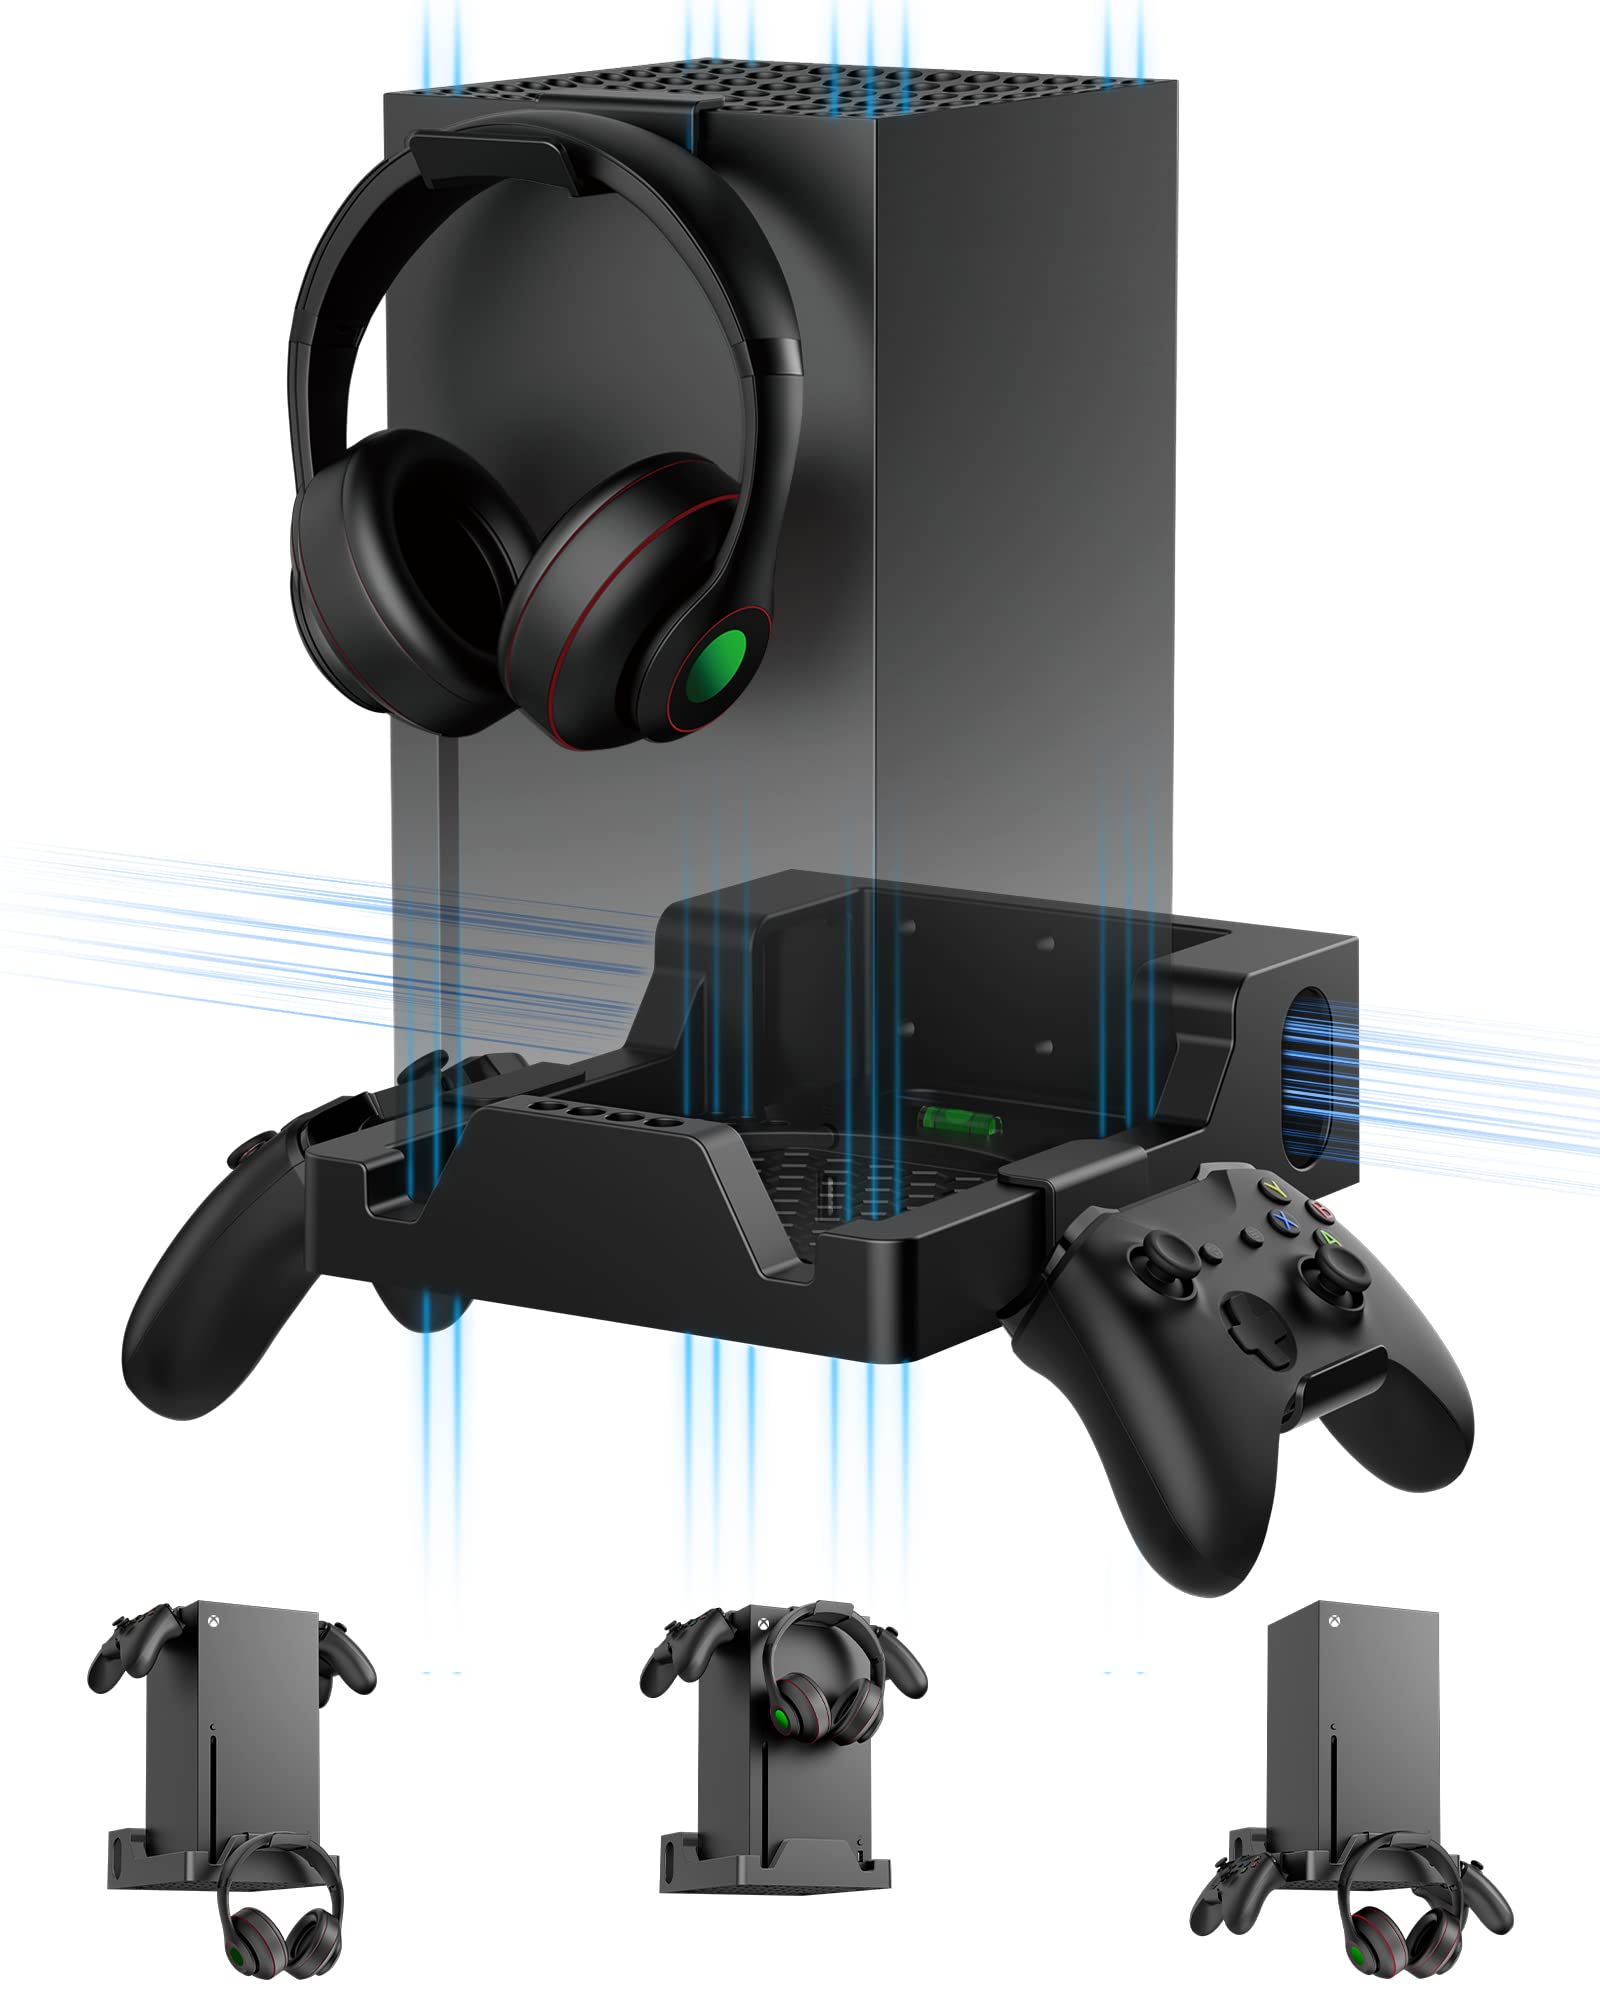 Wandhalterung für Xbox Series X, Wiilkac 4in1 Wandhalterung Kit für Xbox Series X mit zwei ControllerHalterungen & Kopfhörerhaken, integriertes und belüftetes Design, Konsole kann nach vorne